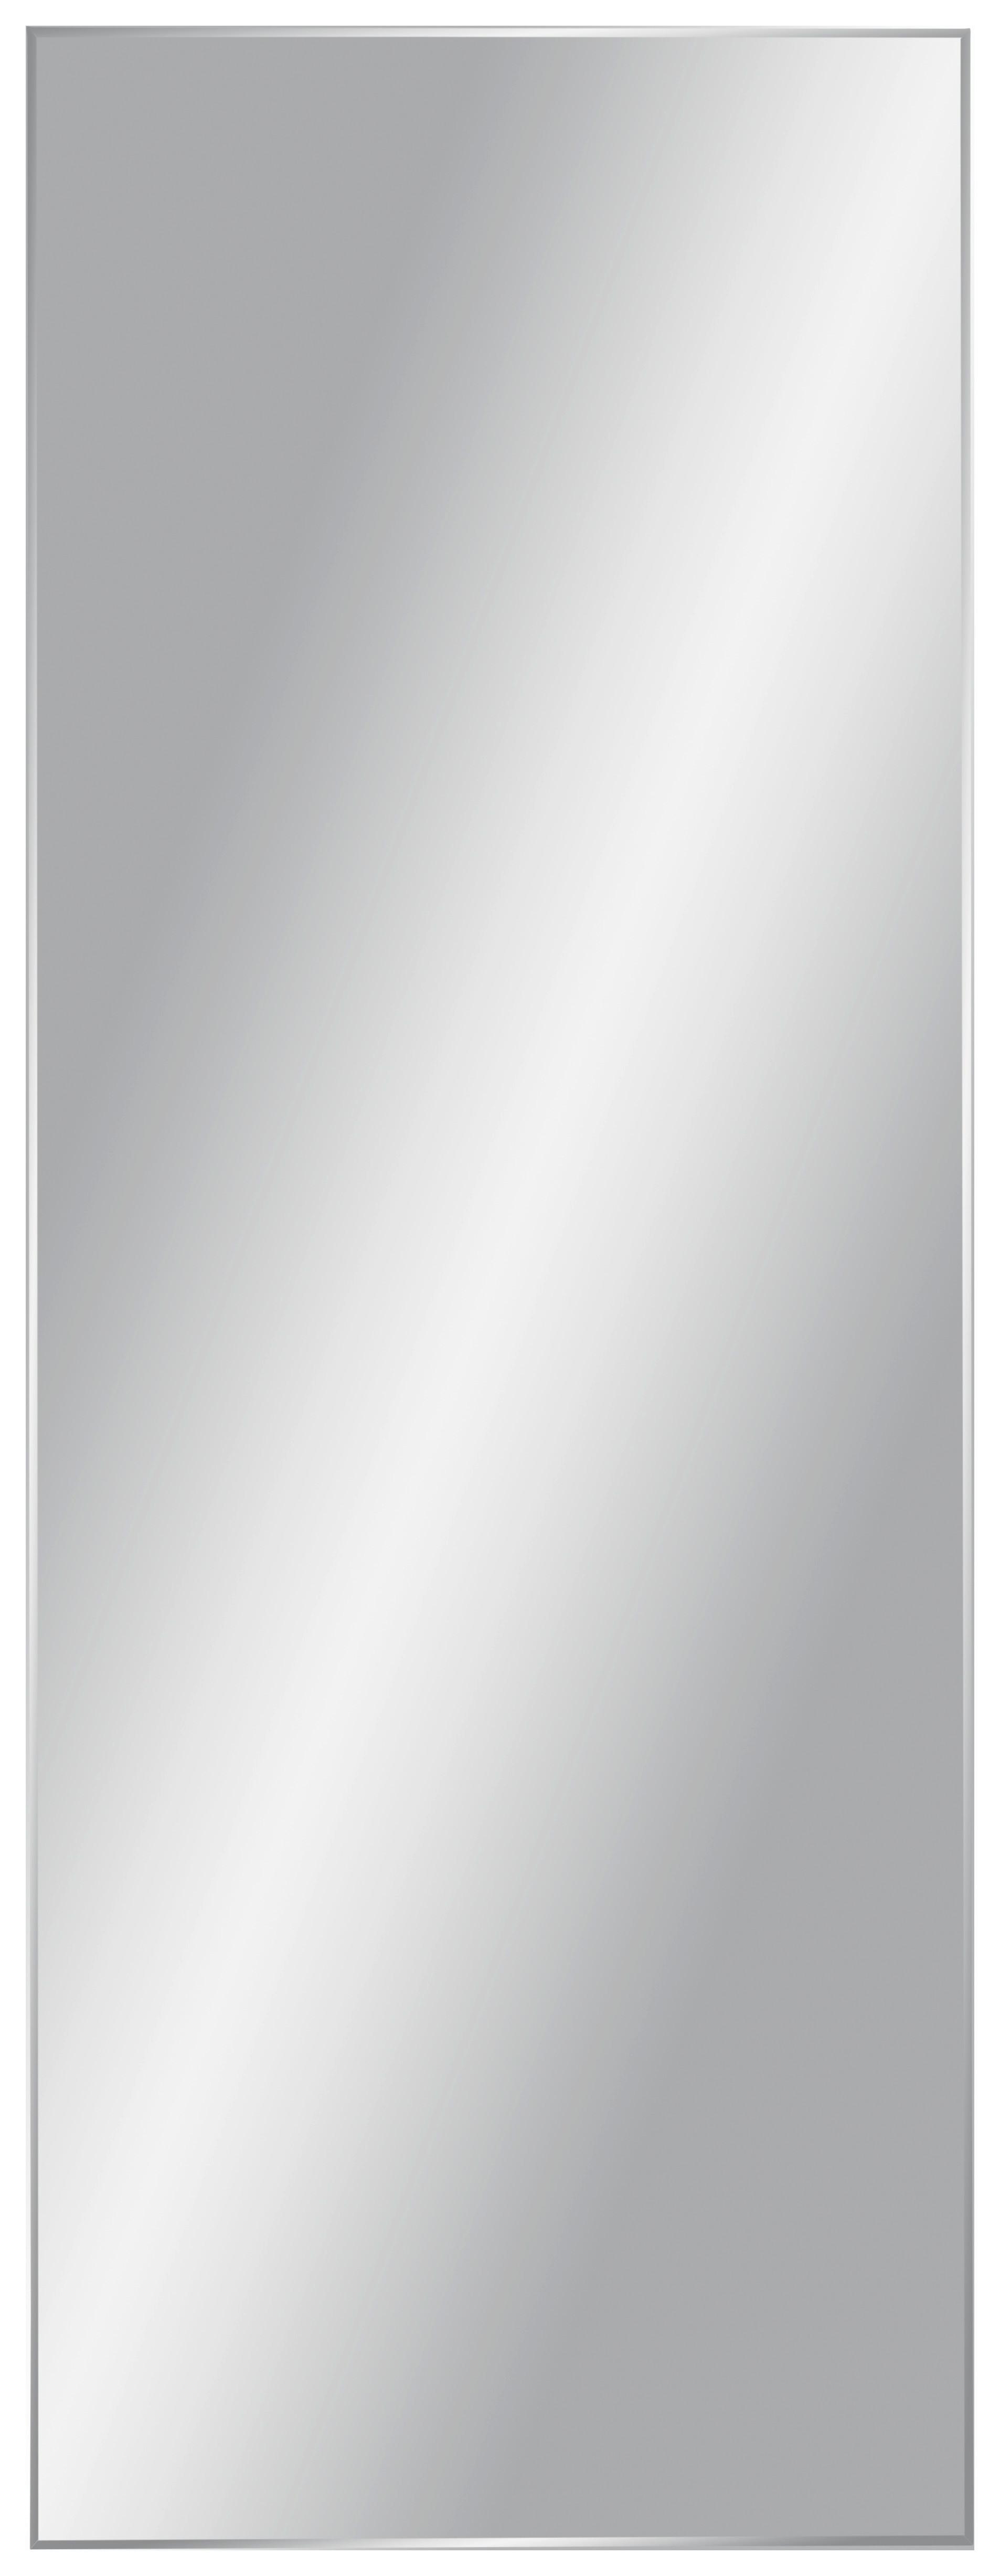 Stensko Ogledalo Messina - srebrna, steklo (60/160cm) - Modern Living